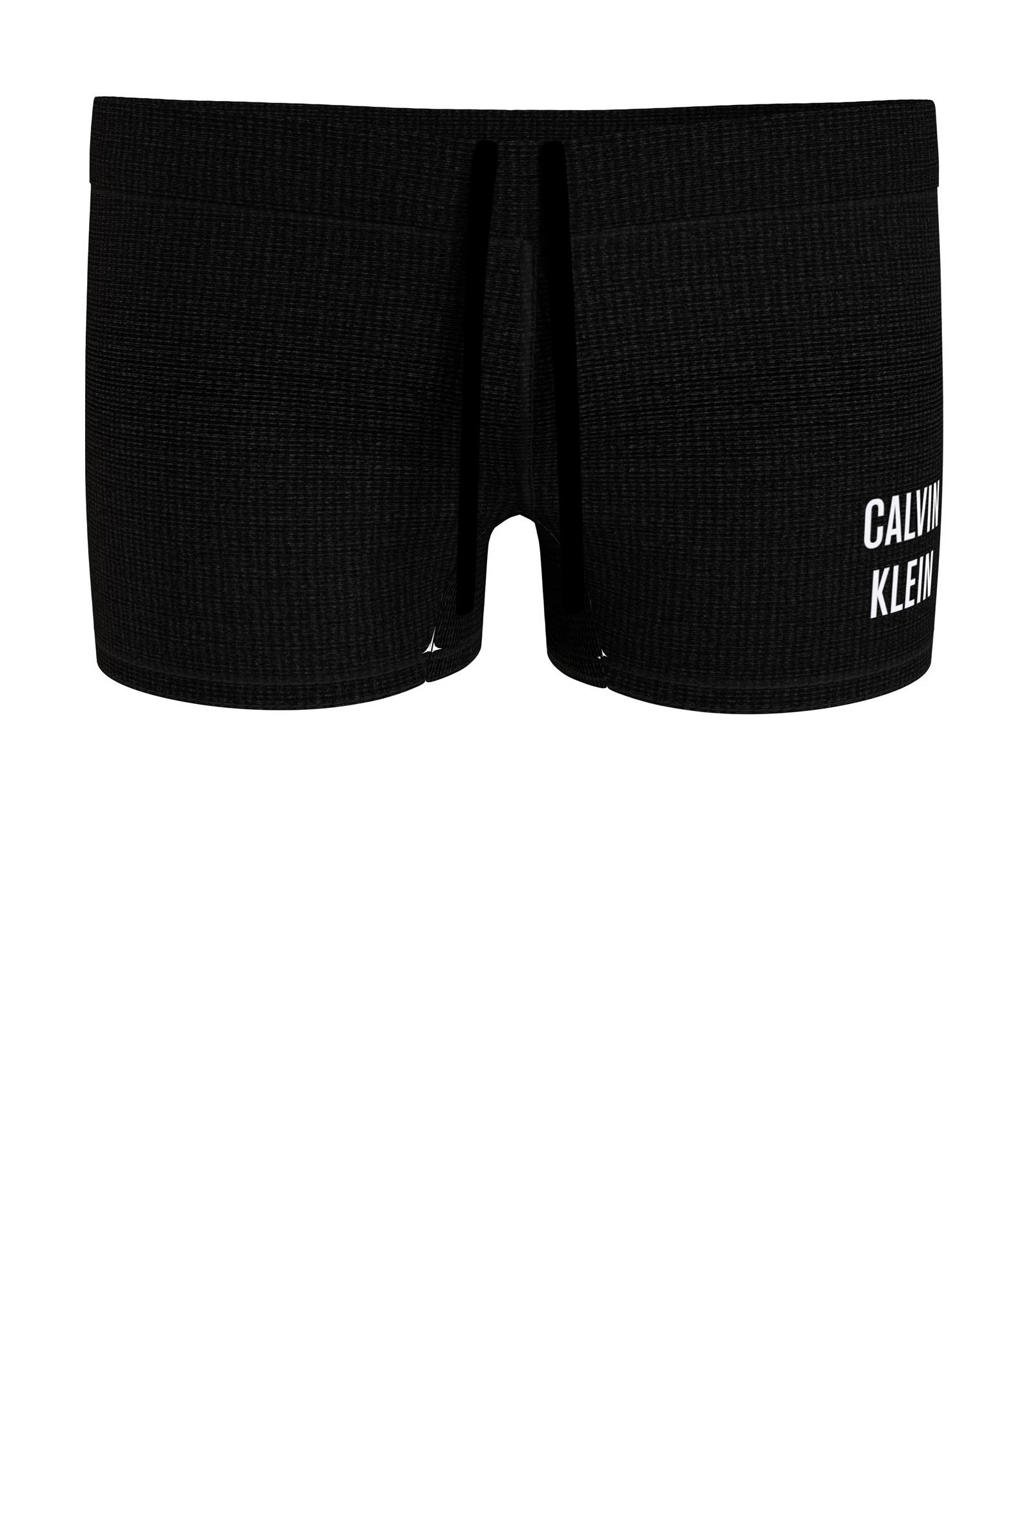 Calvin Klein zwemboxer zwart